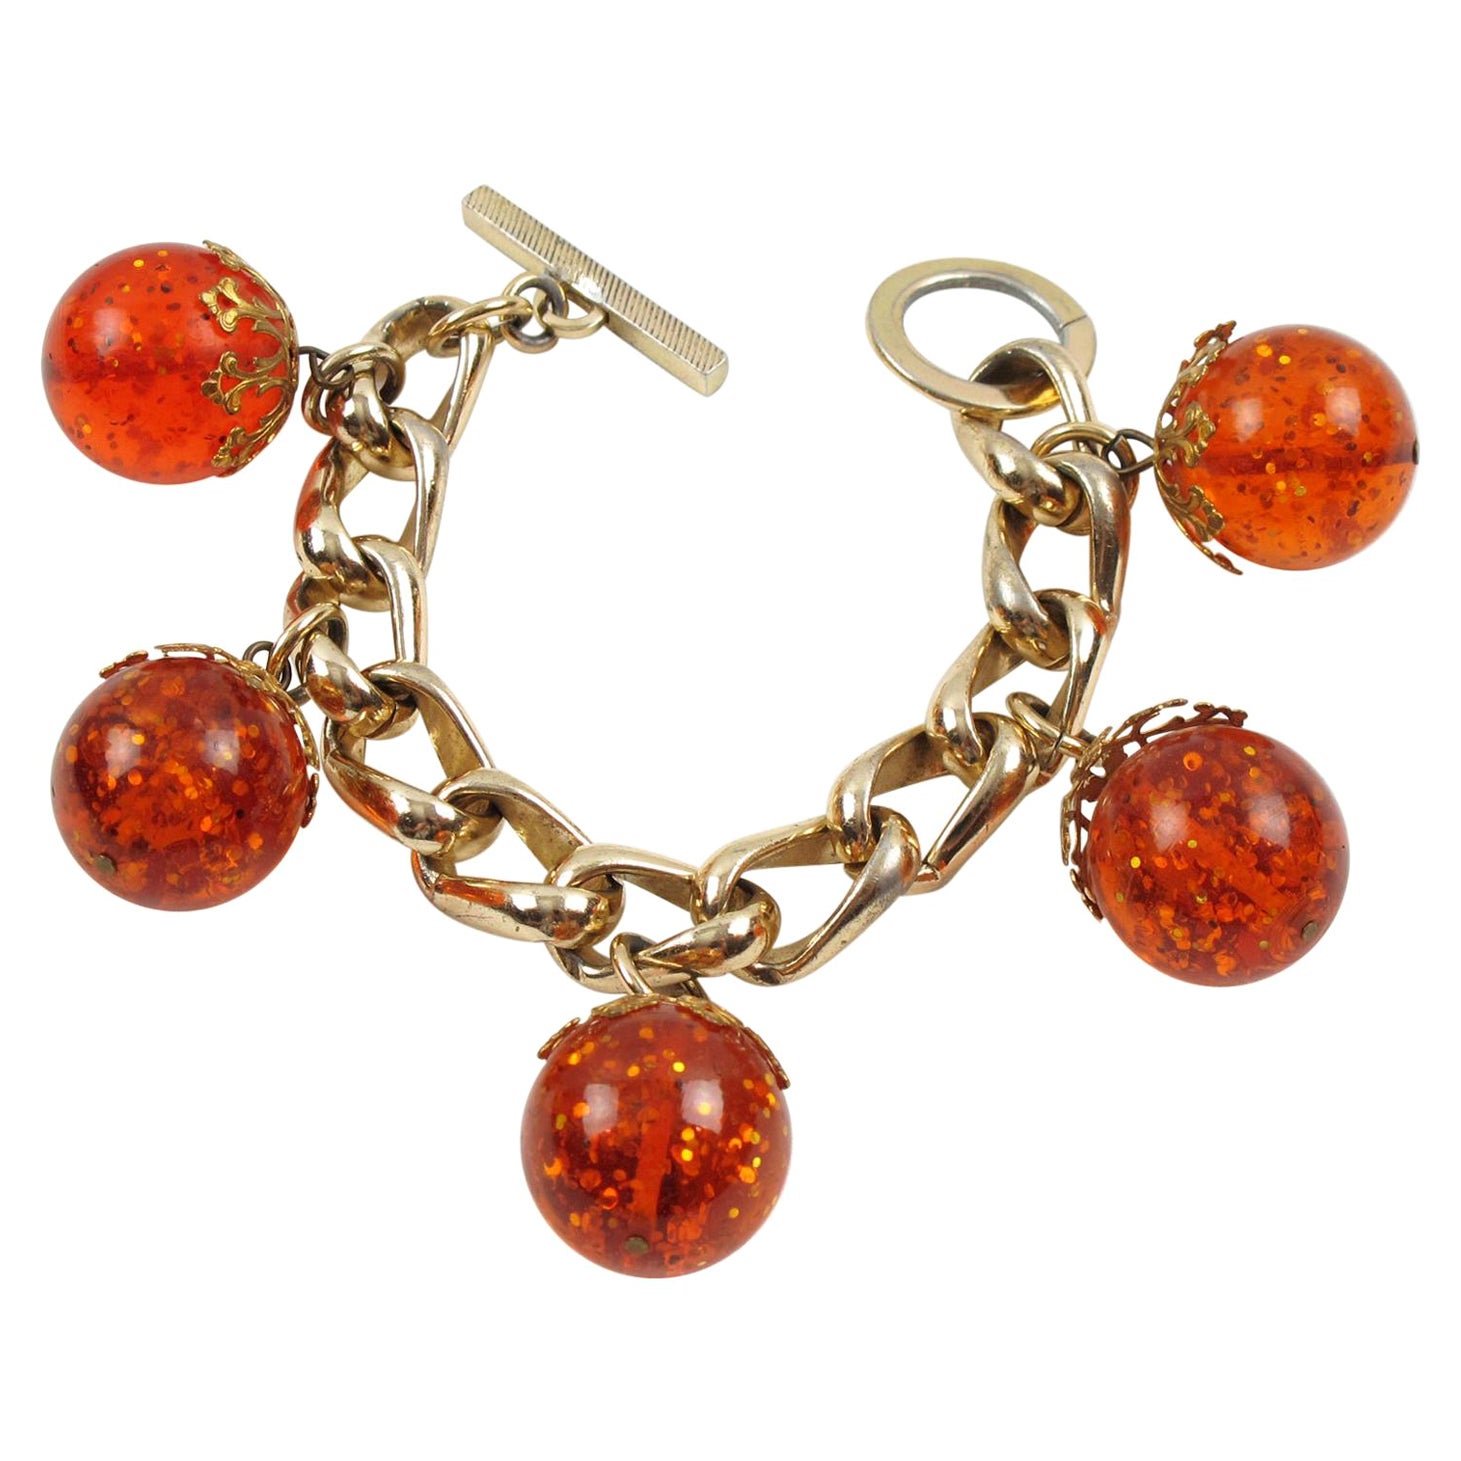 Gilded Aluminum and Prystal Orangeade Bakelite Beads Charm Bracelet For Sale